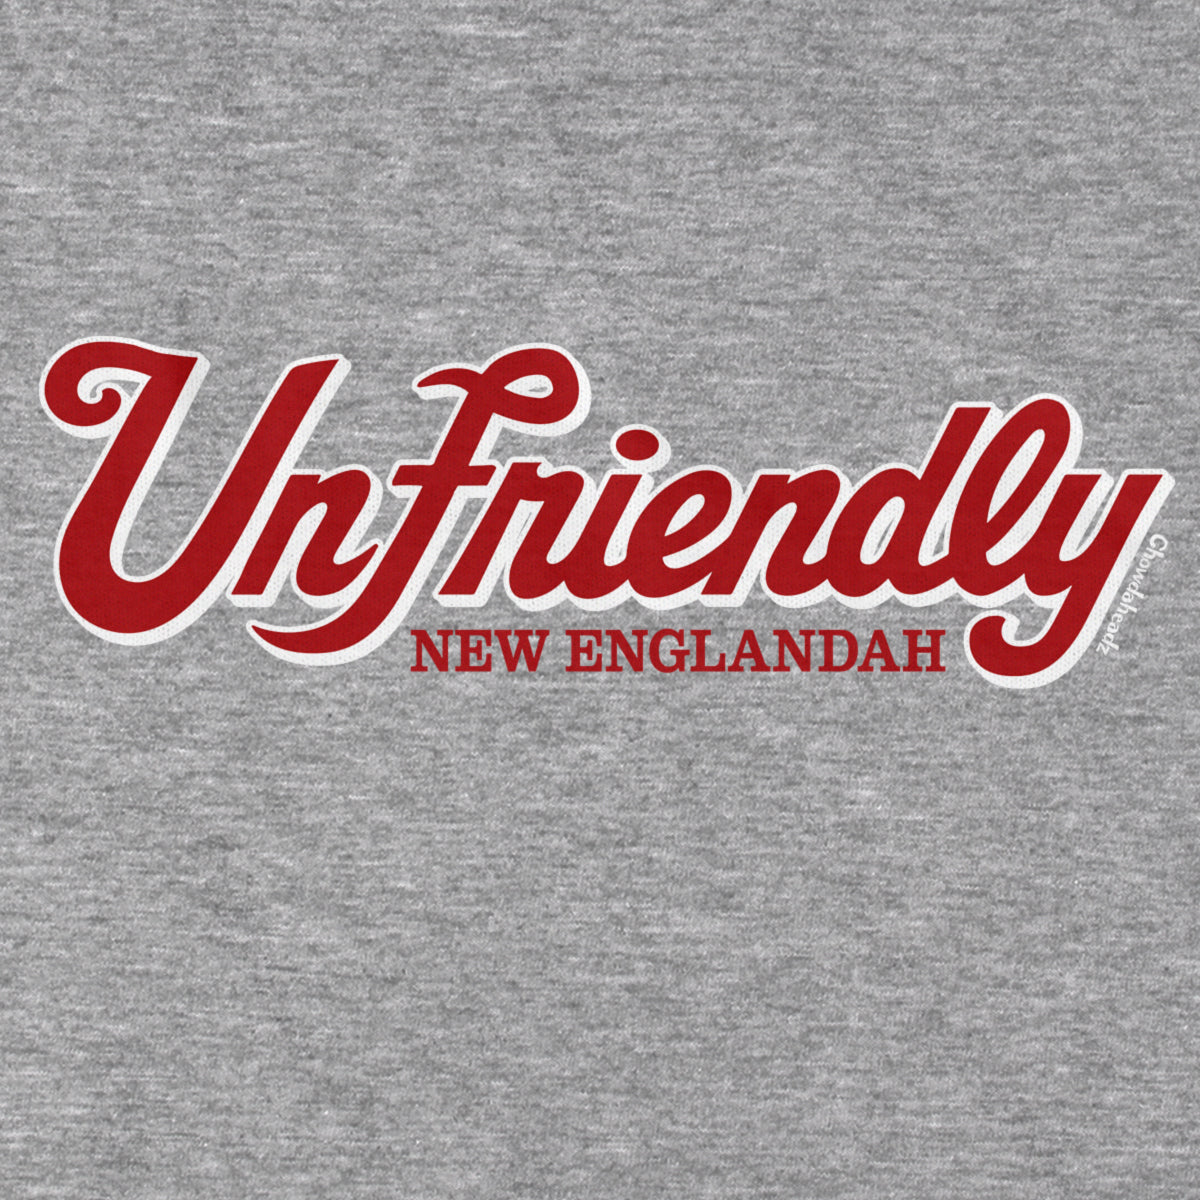 Unfriendly New Englandah Logo T-Shirt - Chowdaheadz